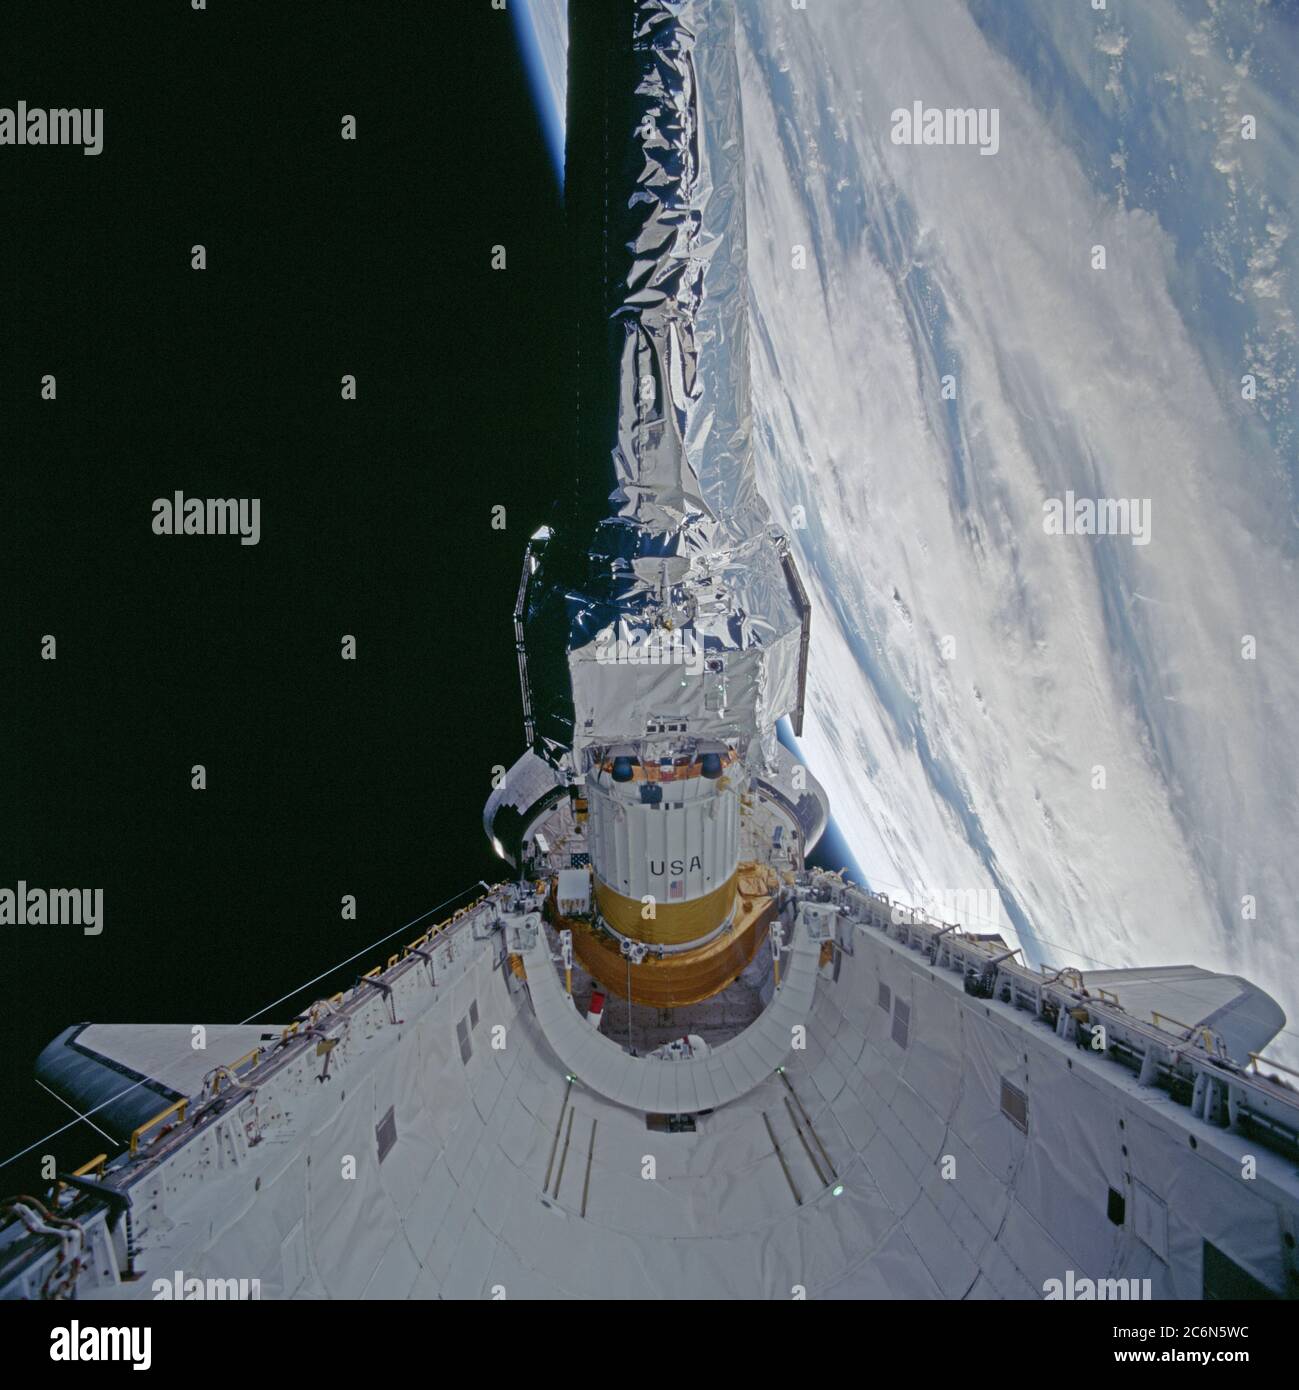 (22-27. Juli 1999) --- dieser 70mm-Rahmen zeigt das Röntgenobservatorium Chandra während seines Einsatzes aus der Nutzlastbucht des Space Shuttle Columbia. Die Hauptaufgabe der STS-93-Crew war es, das weltweit leistungsfähigste Röntgenteleskop von#0146 einzusetzen. Es war auch eine der ersten Aktionen der Astronauten, die nur wenige Stunden nach der Ankunft des Shuttle &#0146;s in der Erdumlaufbahn geschah. Diese Szene ist eine von einer Serie von Standbildern, die von der Crew vor und während des Einsatzes des 50,162-Pfund-Observatoriums aufgenommen wurden. Stockfoto